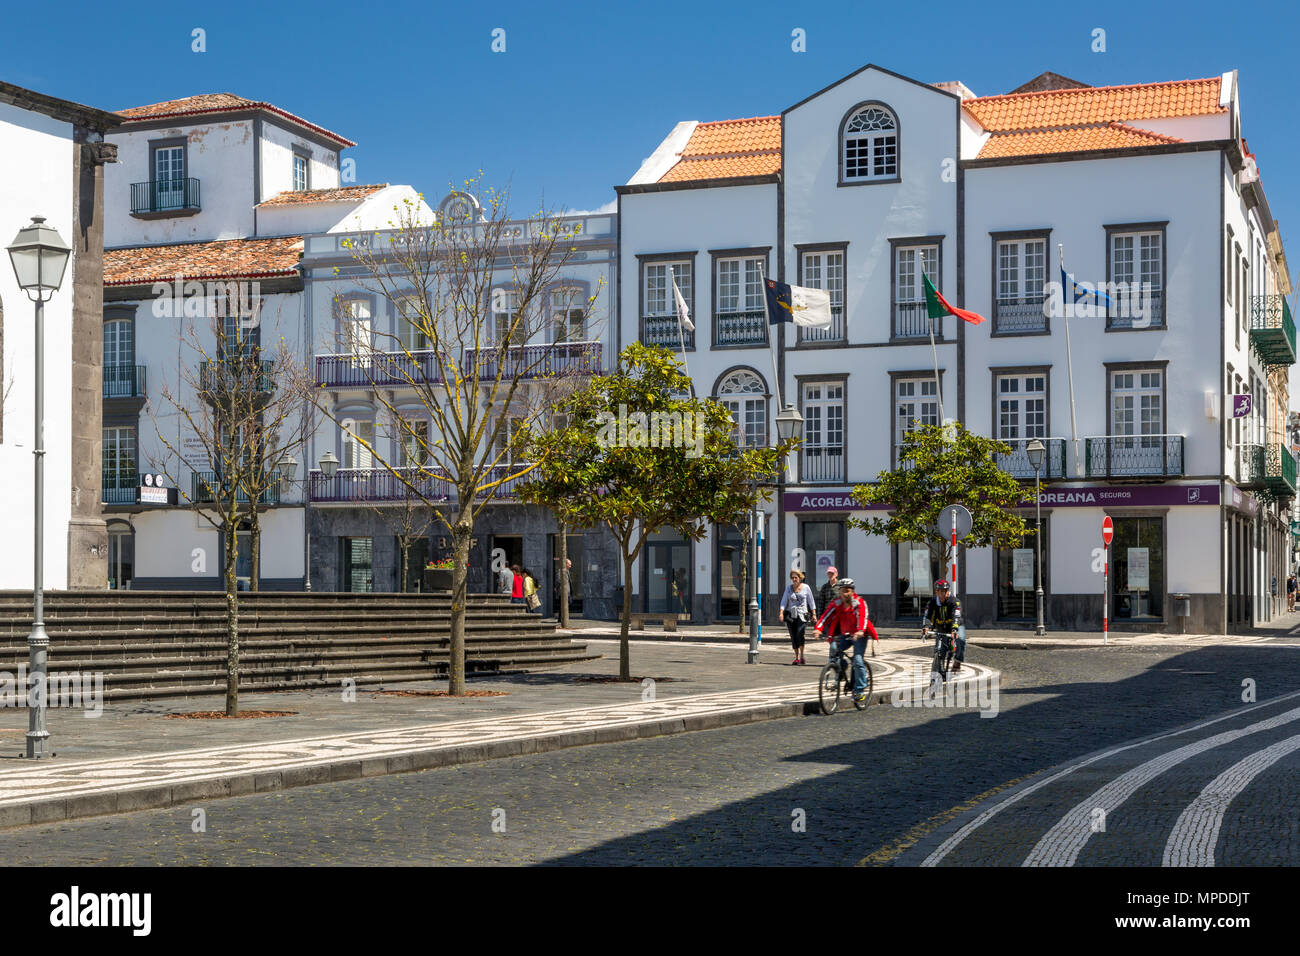 Street scene along Rua dos Mercadores, Ponta Delgada, Sao Miguel Island, Azores, Portugal Stock Photo